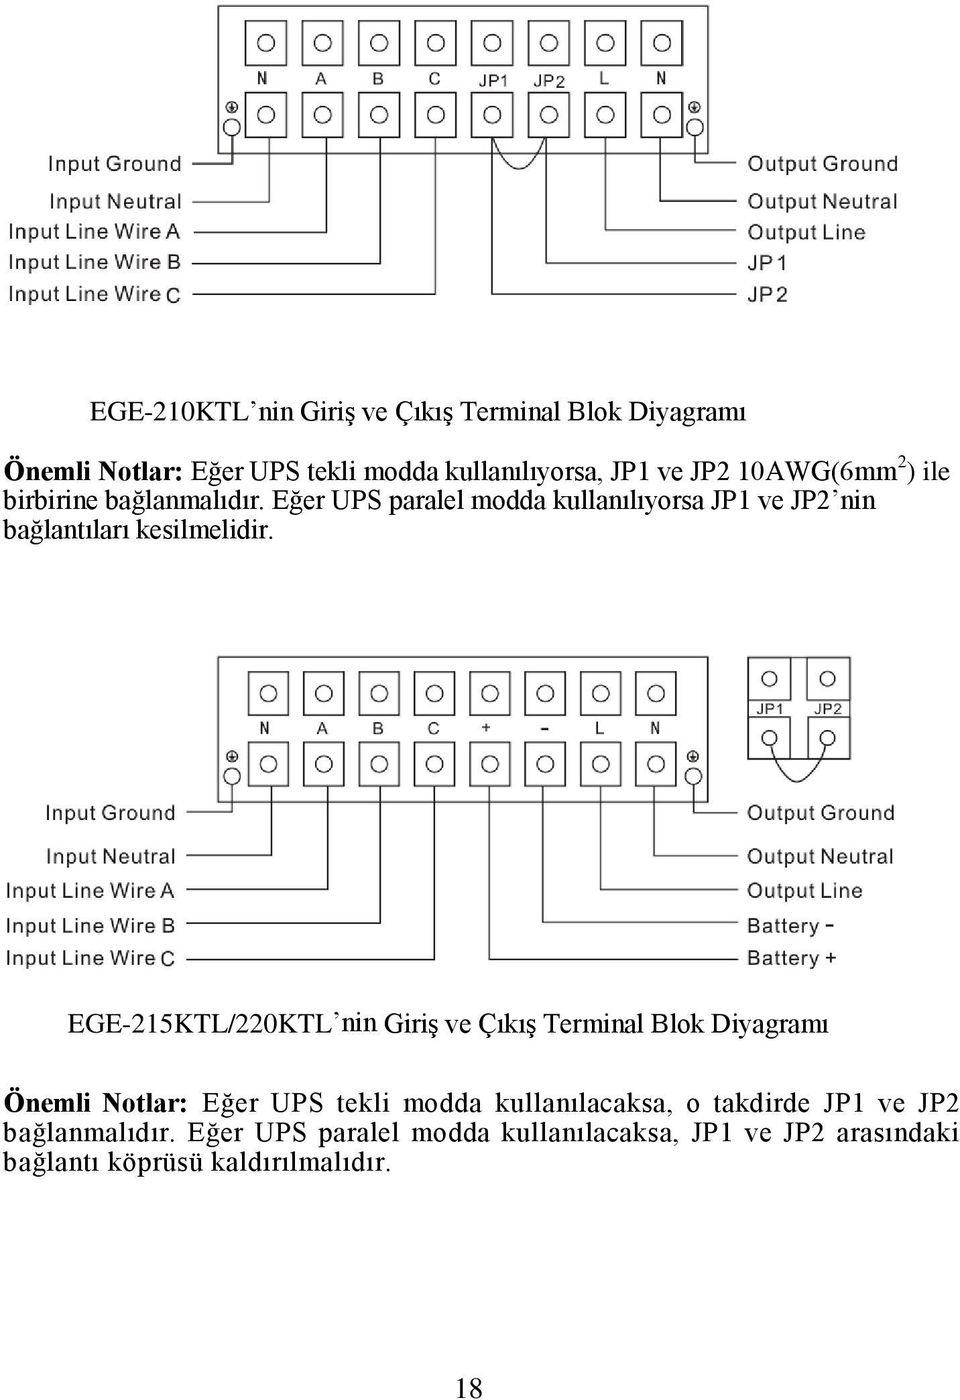 EGE-215KTL/220KTL nin Giriş ve Çıkış Terminal Blok Diyagramı Önemli Notlar: Eğer UPS tekli modda kullanılacaksa, o